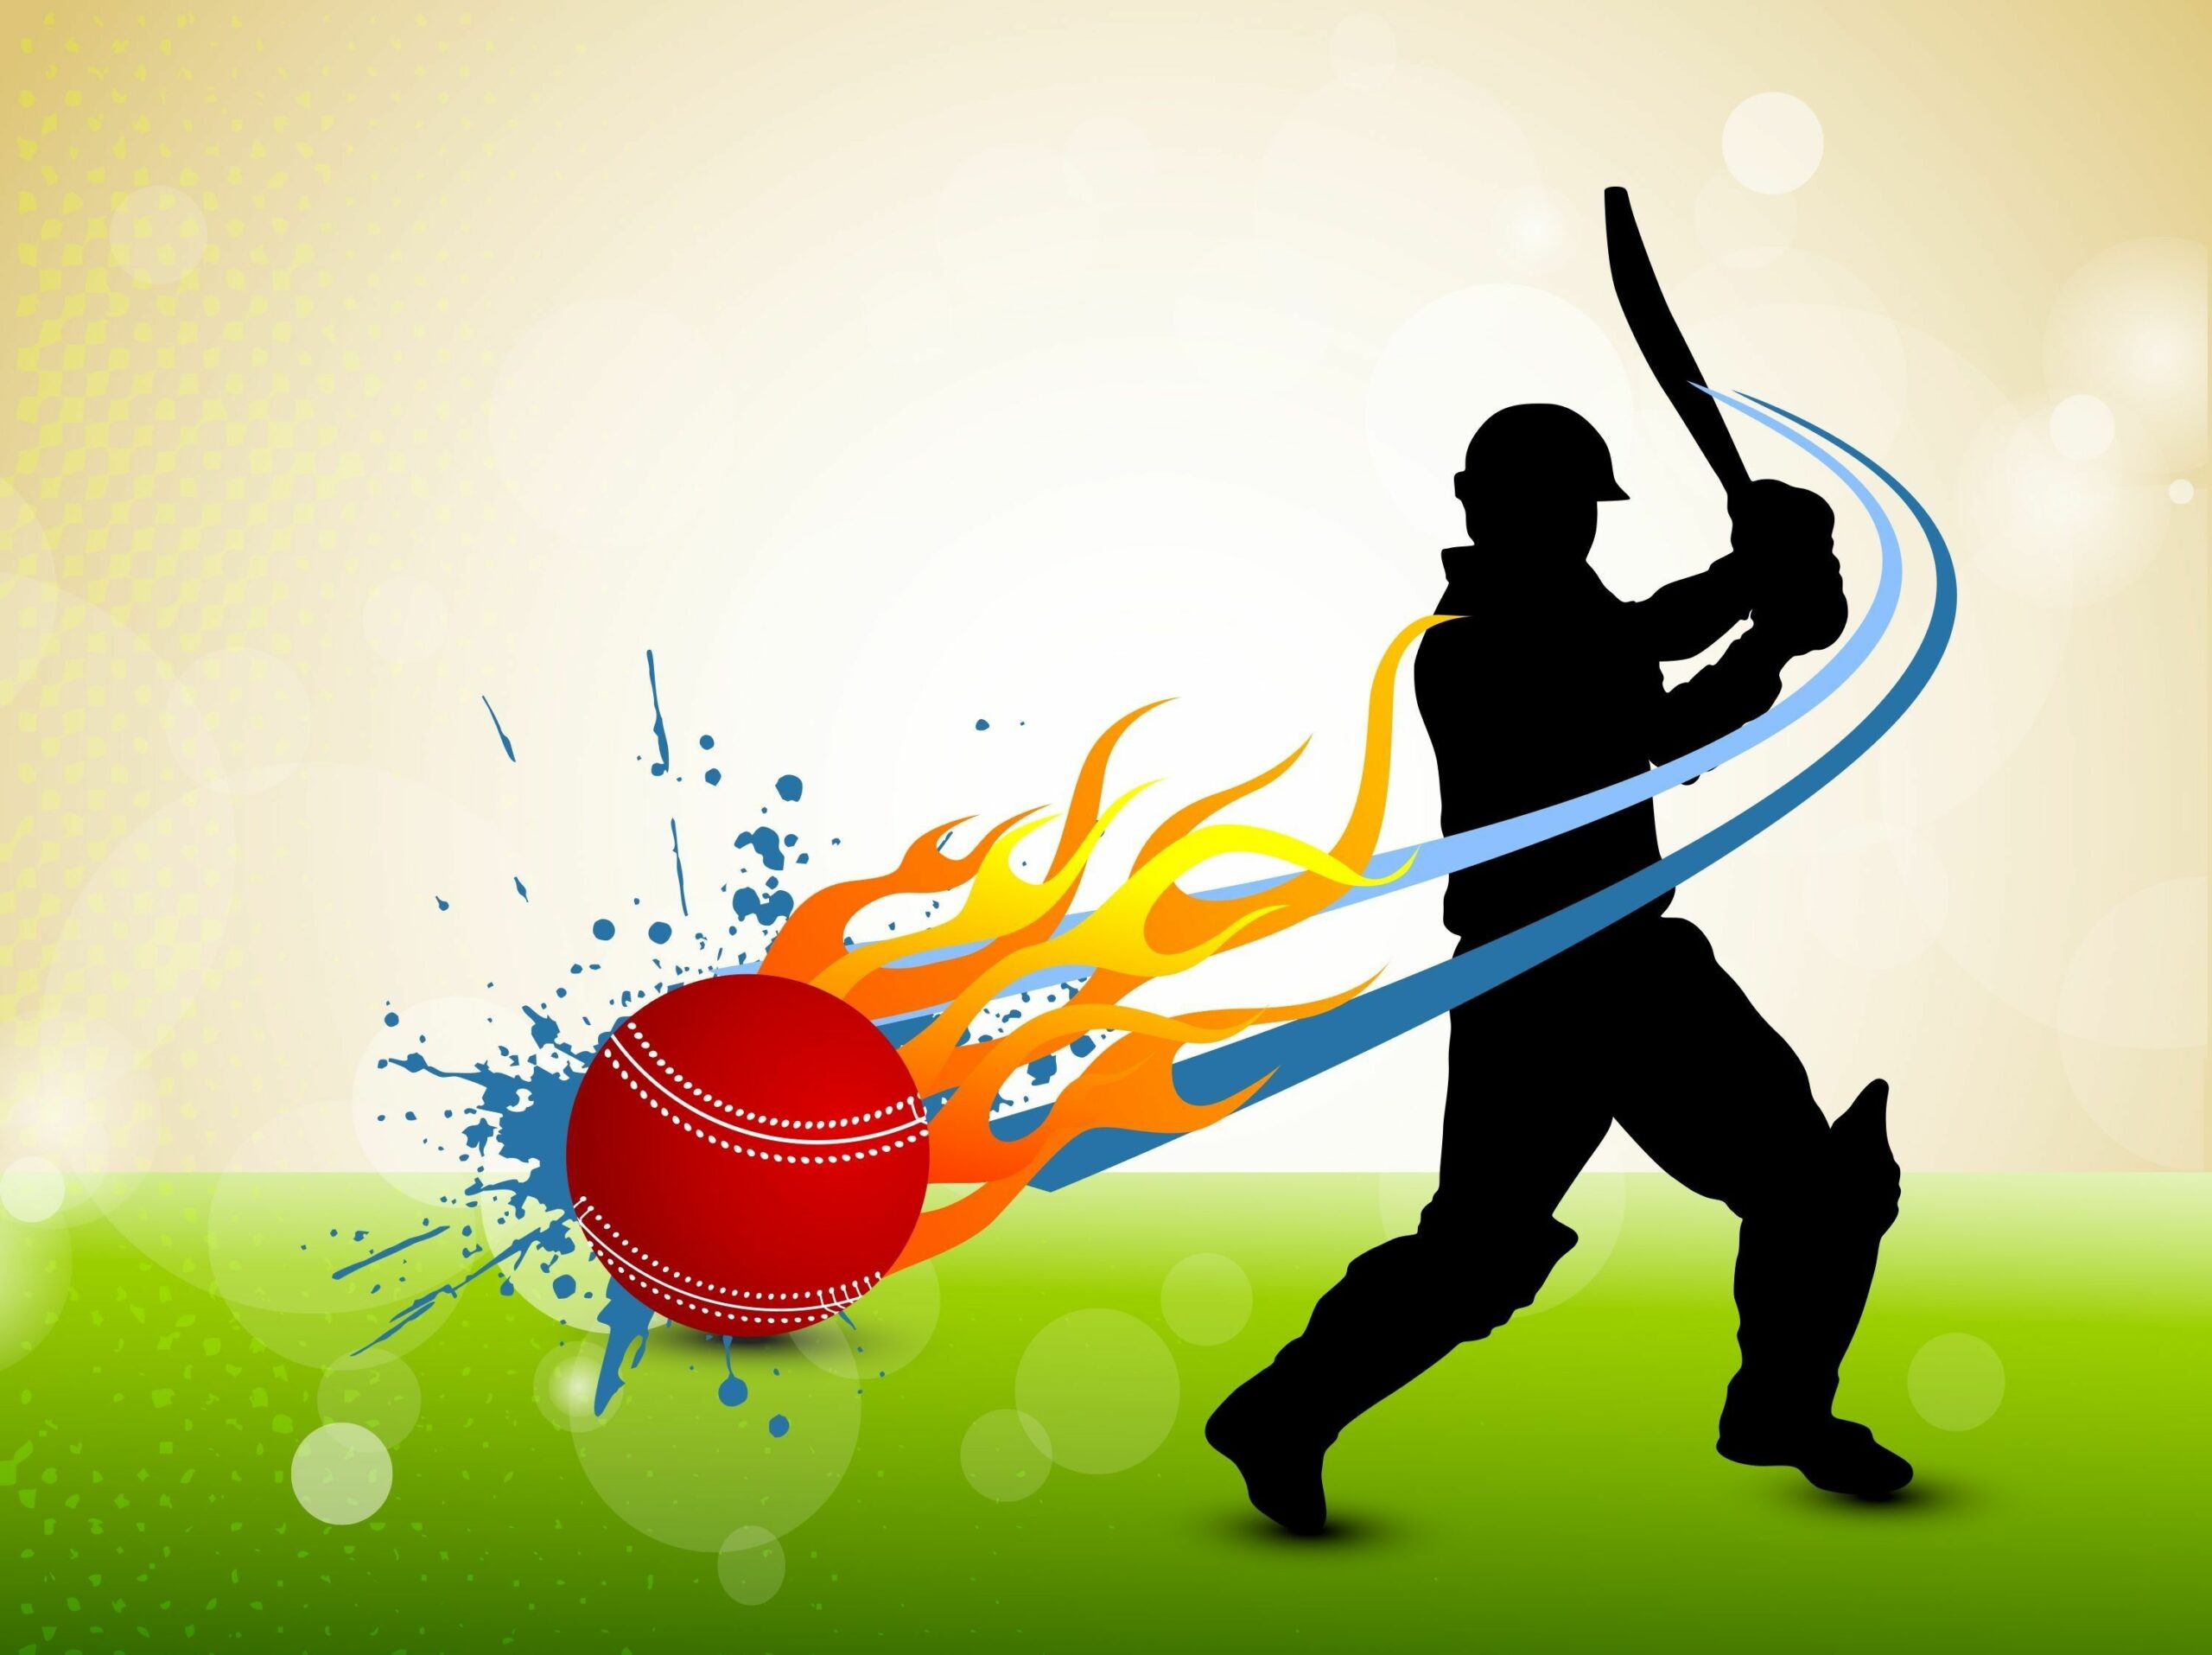 Cricket Bat And Ball Wallpaper. Cricket Bat And Ball Image Download